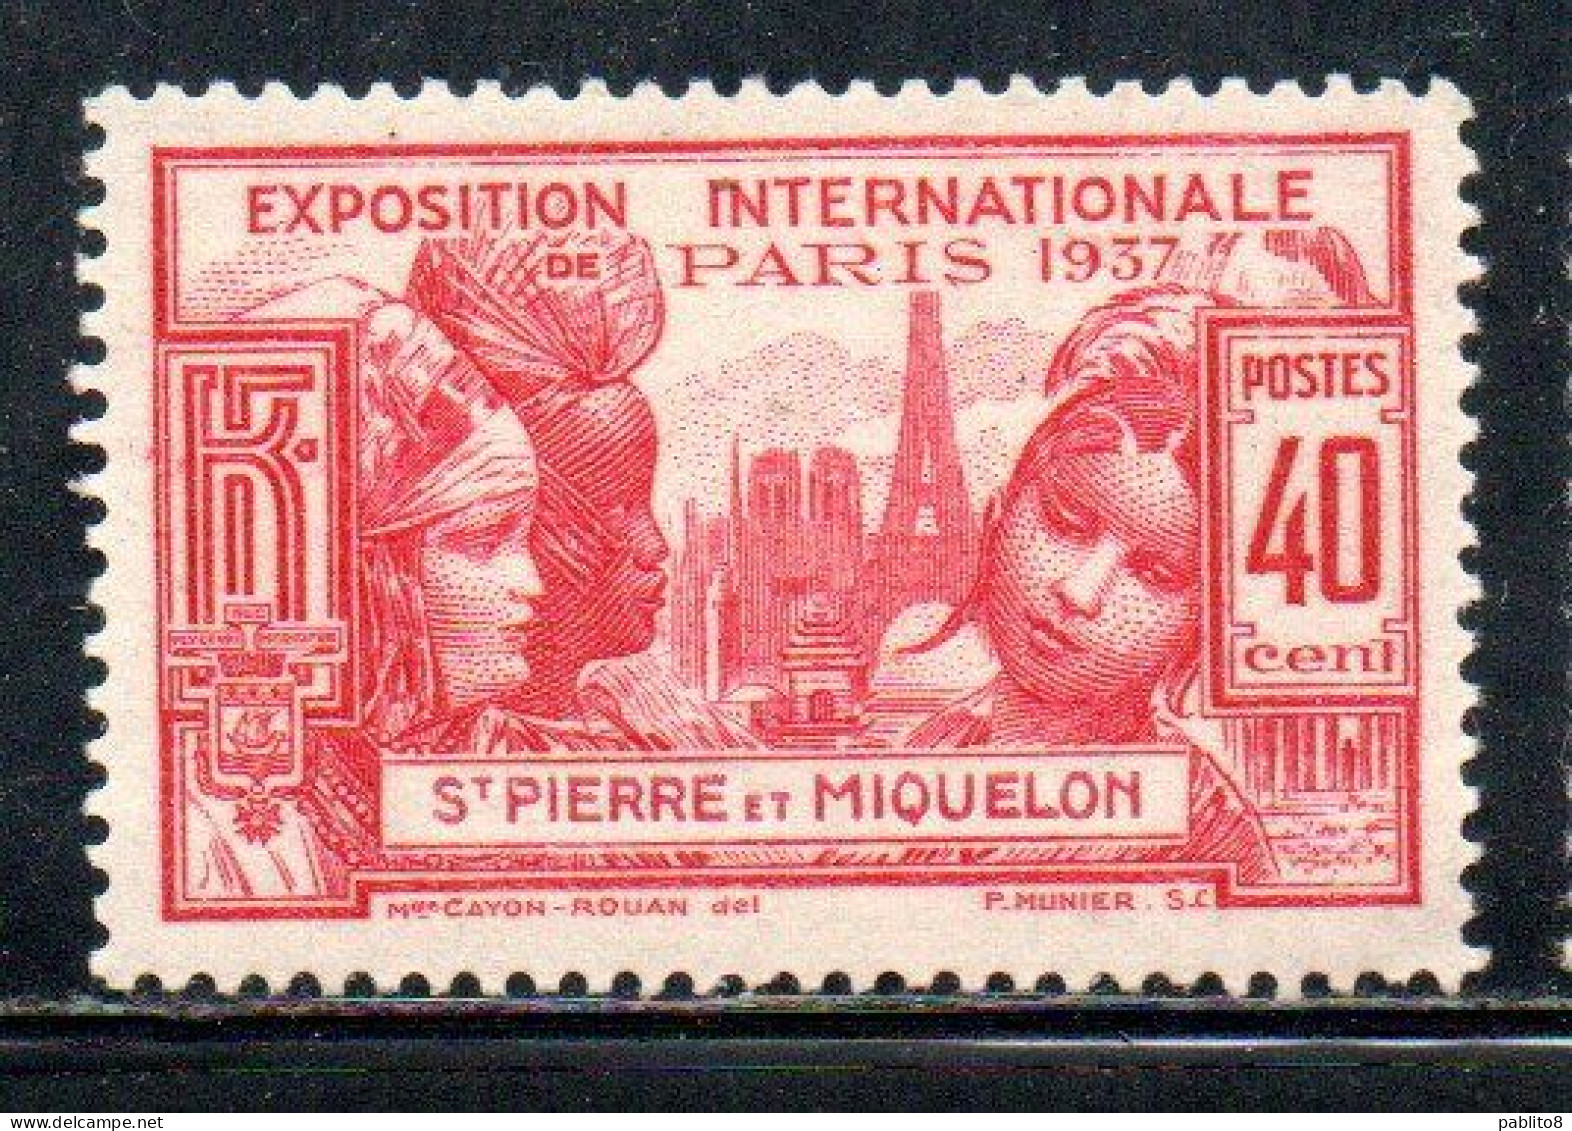 ST. SAINT PIERRE AND ET MIQUELON 1937 PARIS INTERNATIONAL EXPOSITION ISSUE 40c MLH - Unused Stamps